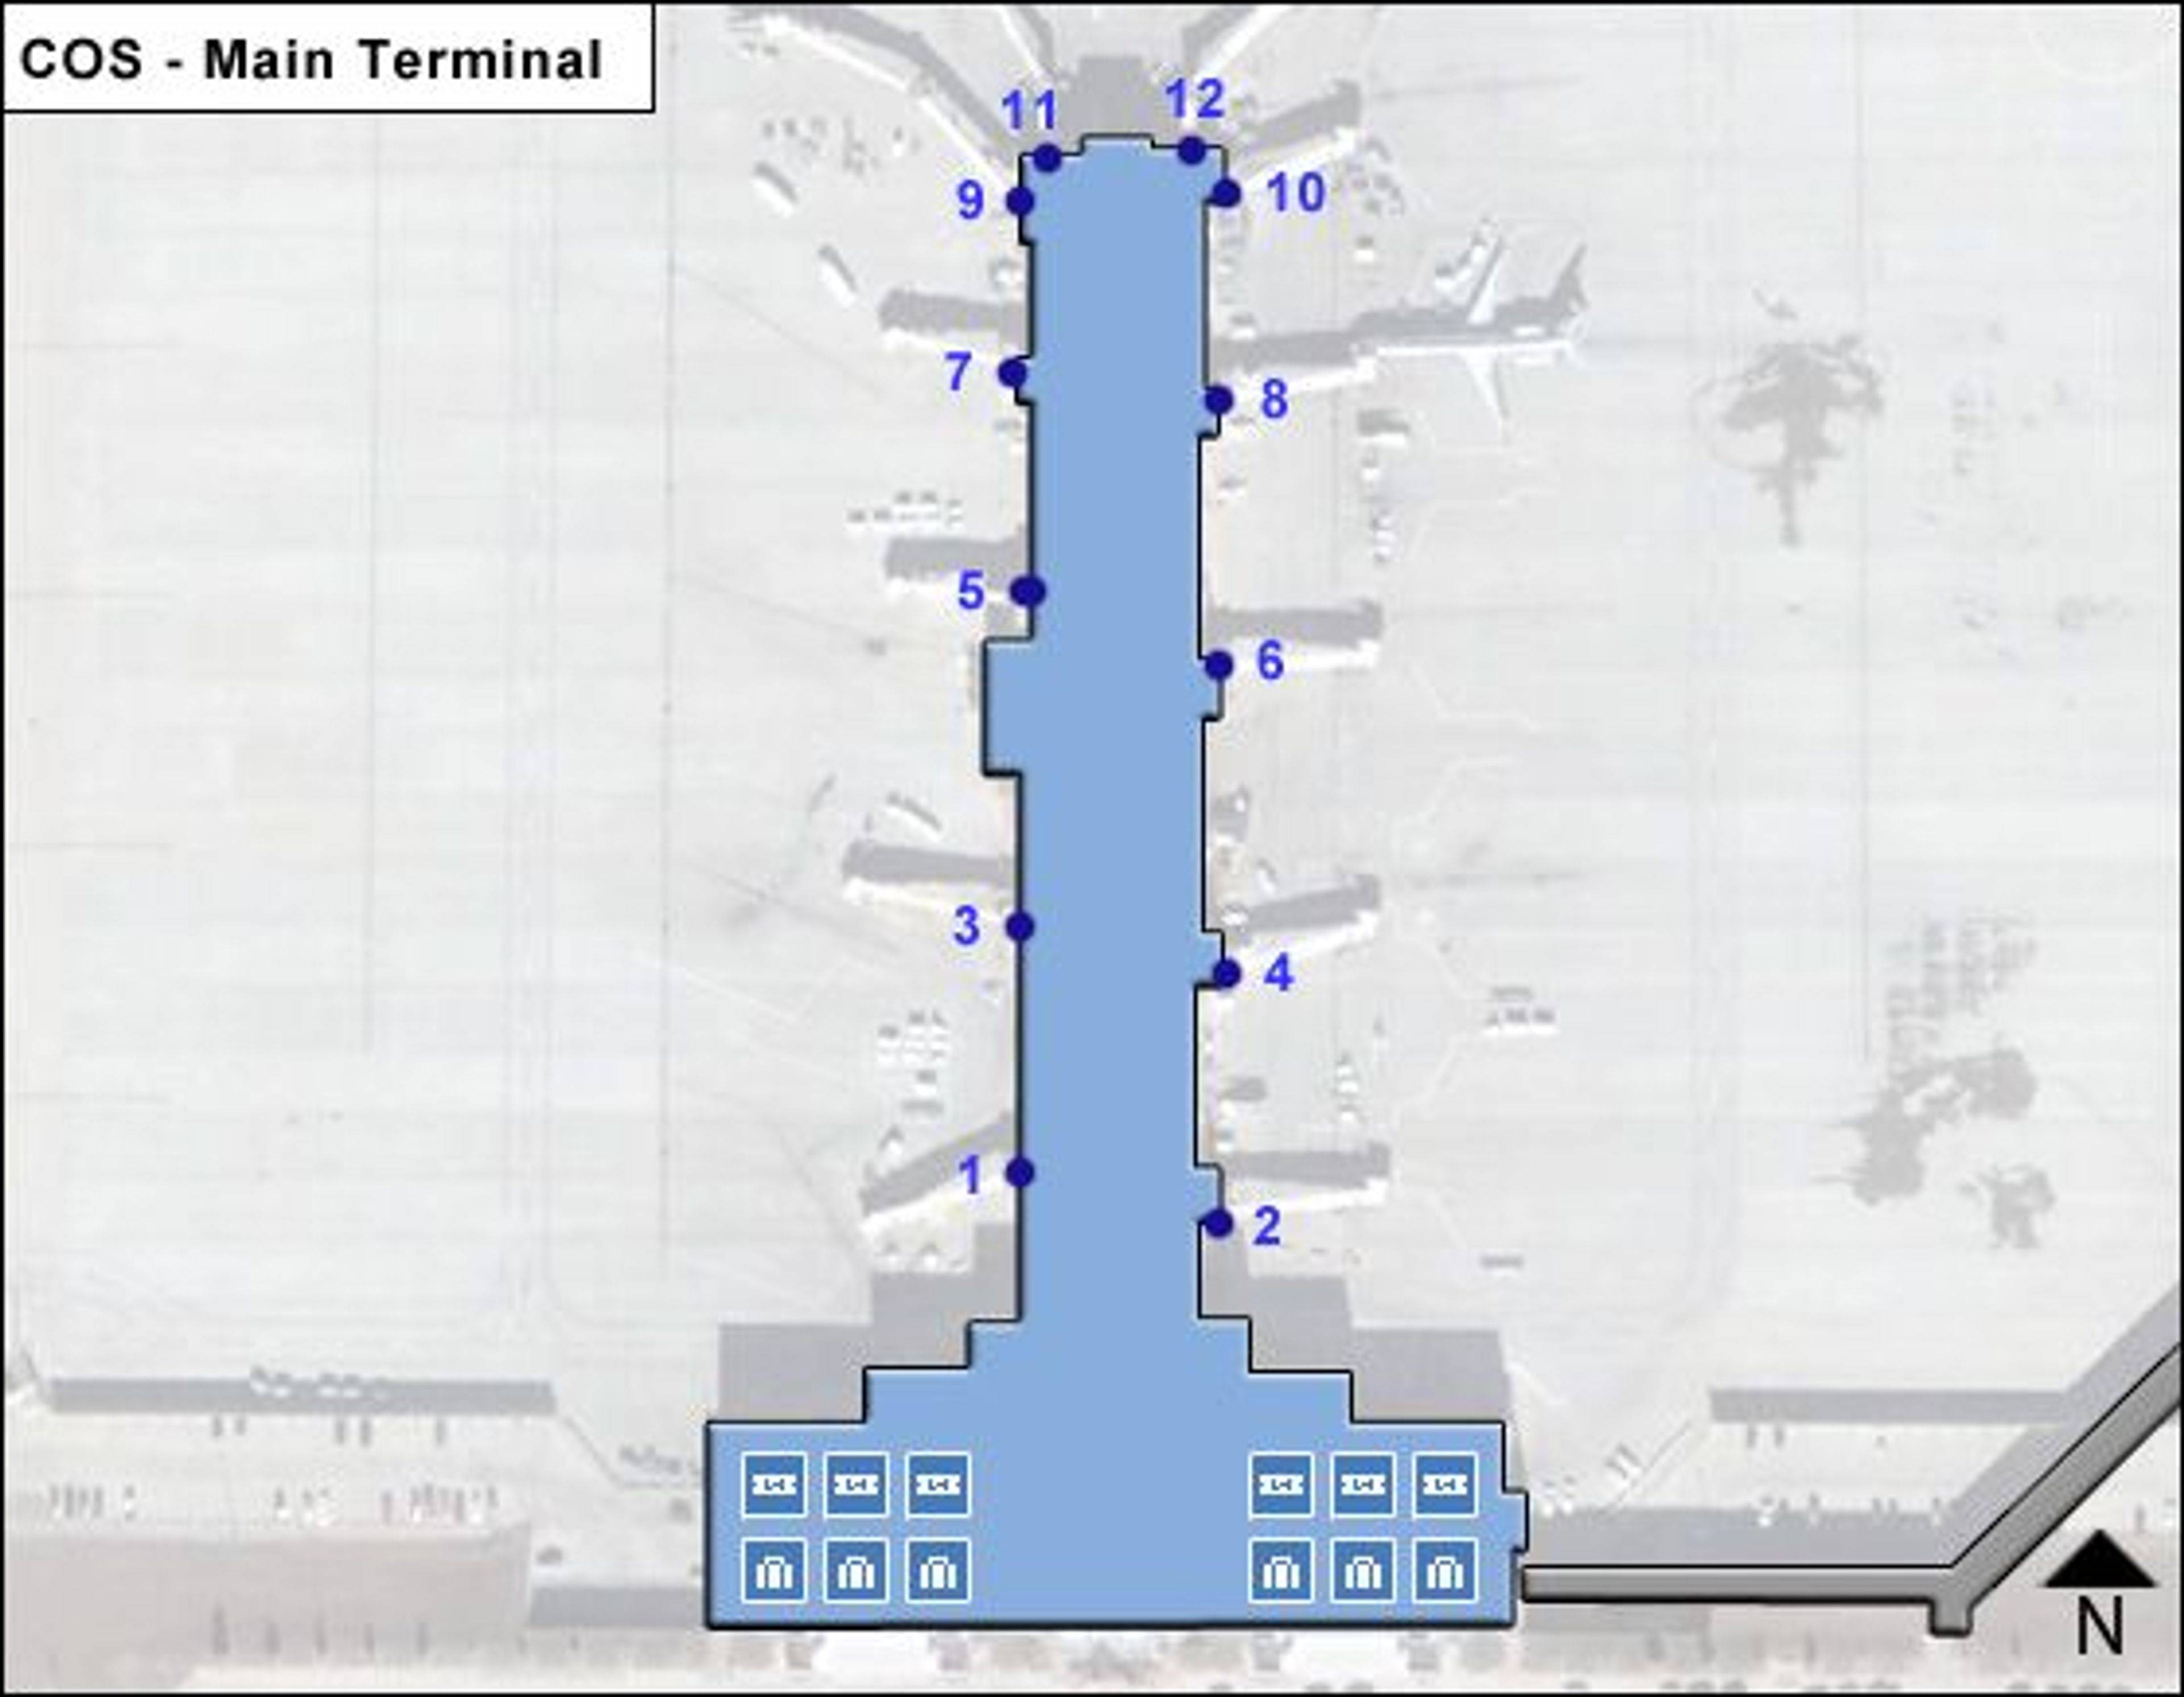 COS Main Terminal Map